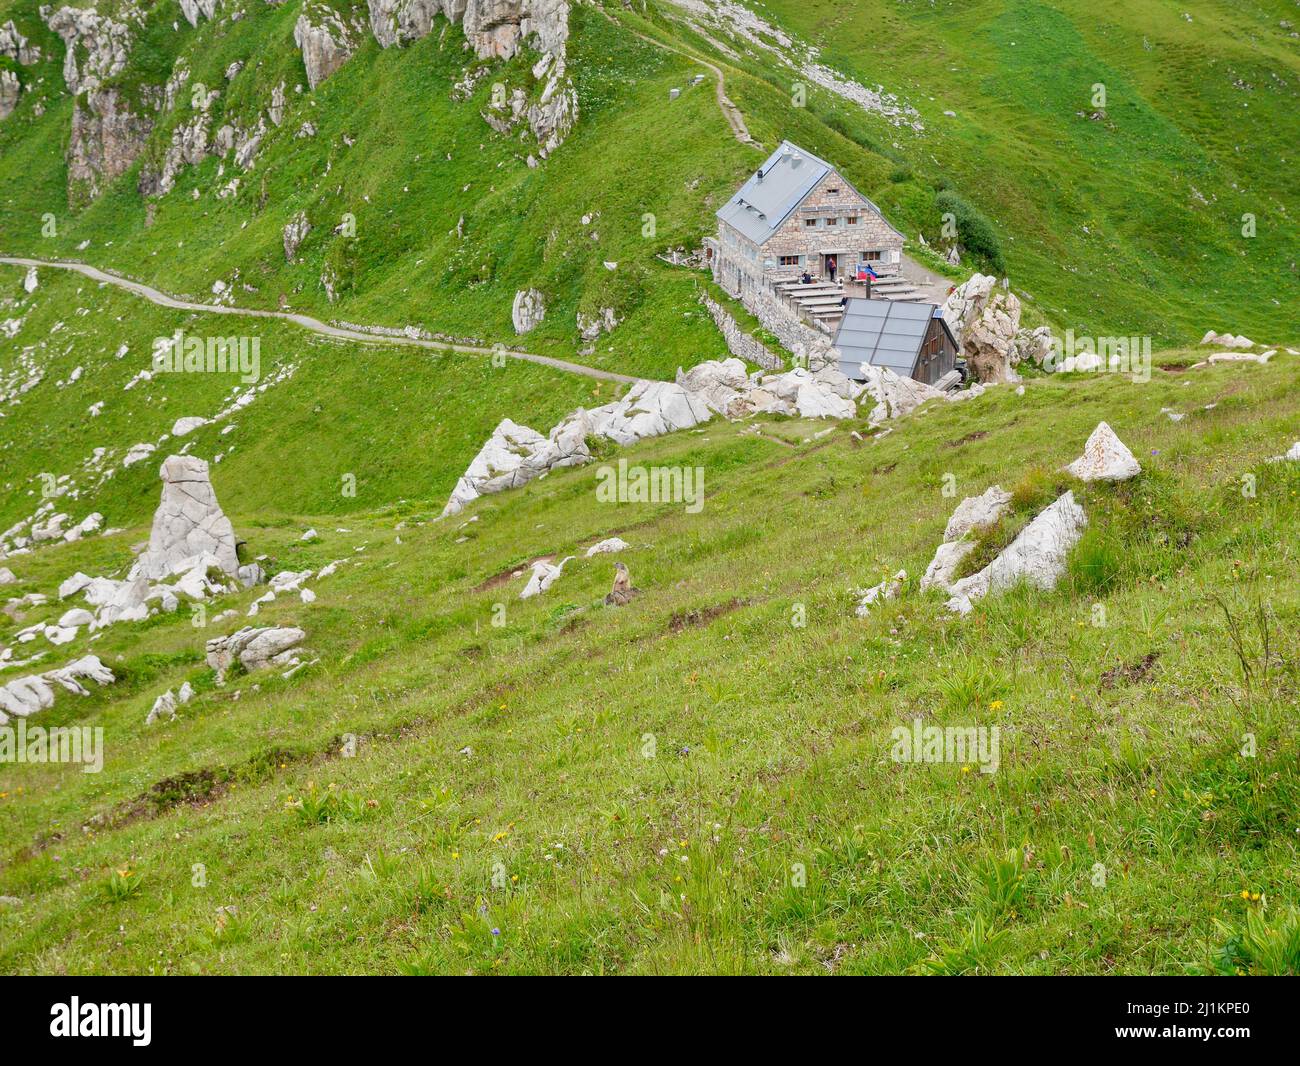 Pfaelzer Huette in Raetikon mountains. Liechtenstein. Stock Photo